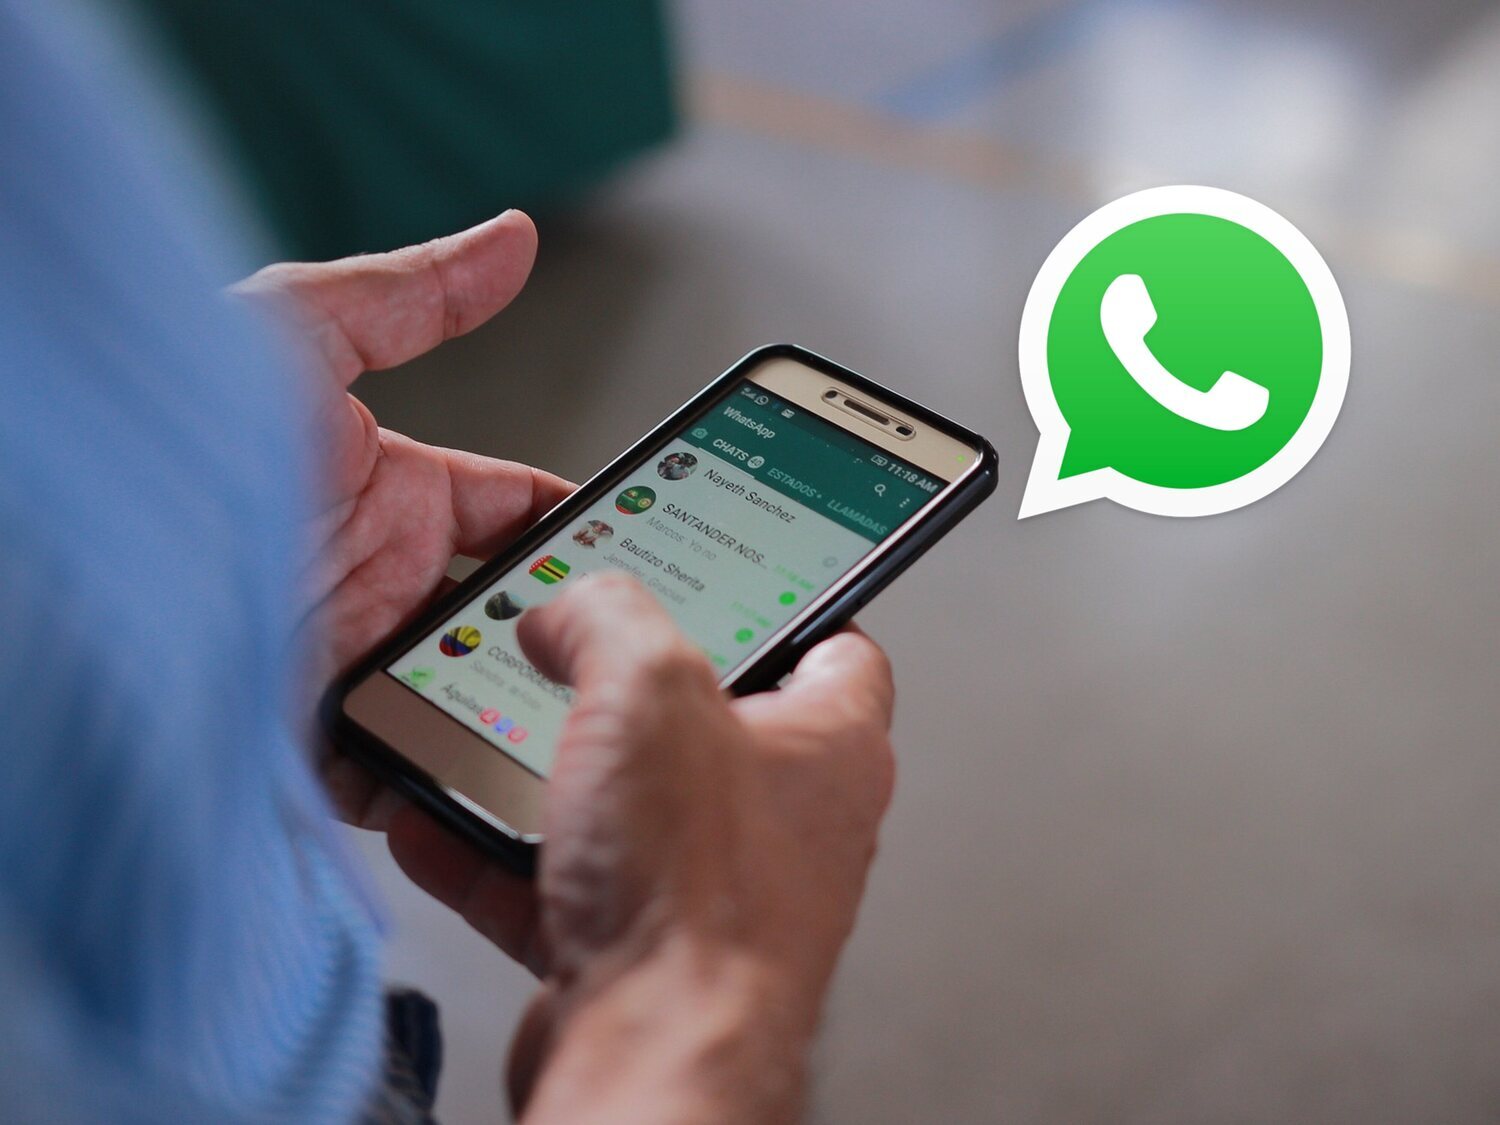 Chats de terceros: así es la nueva función que llega a WhatsApp